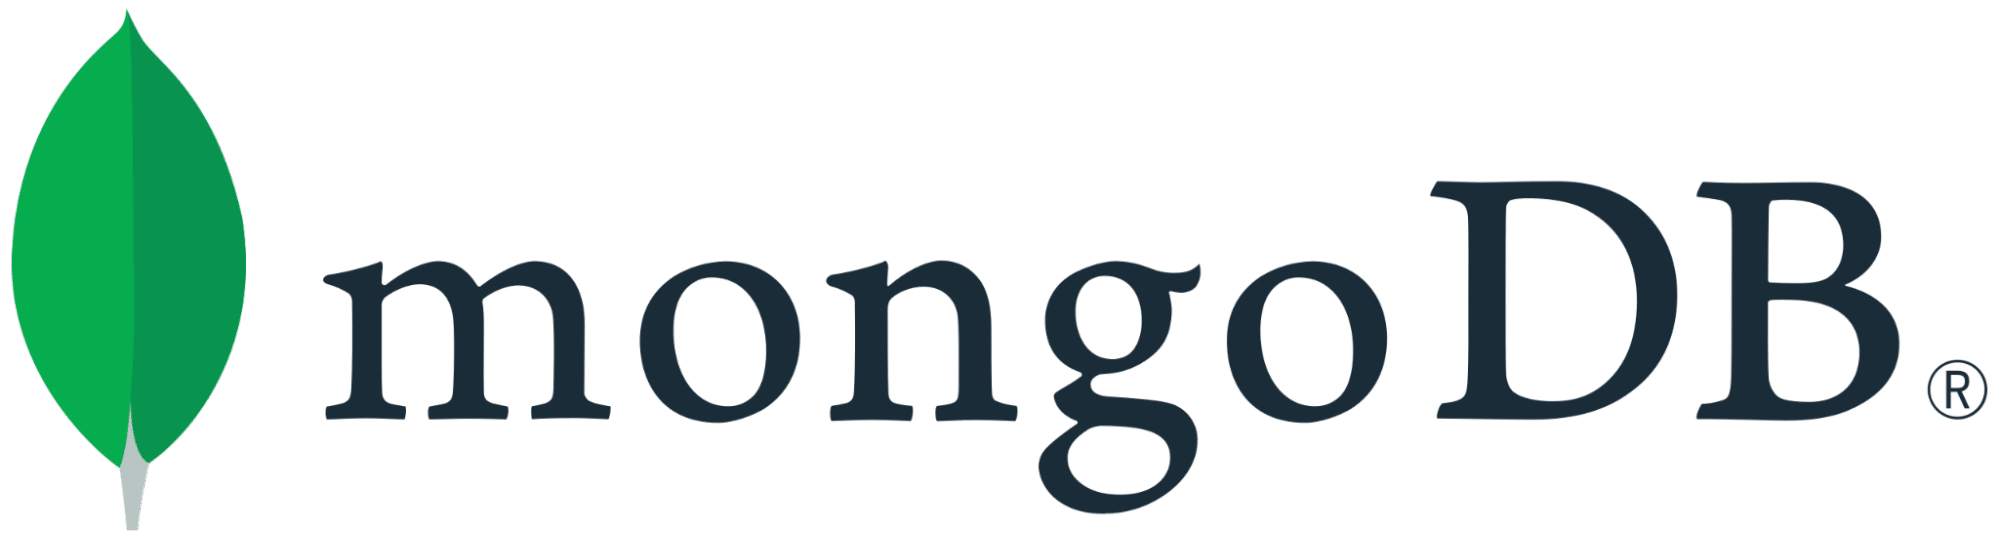 Het MongoDB logo, met de tekst naast een rechtopstaand, groen blad.